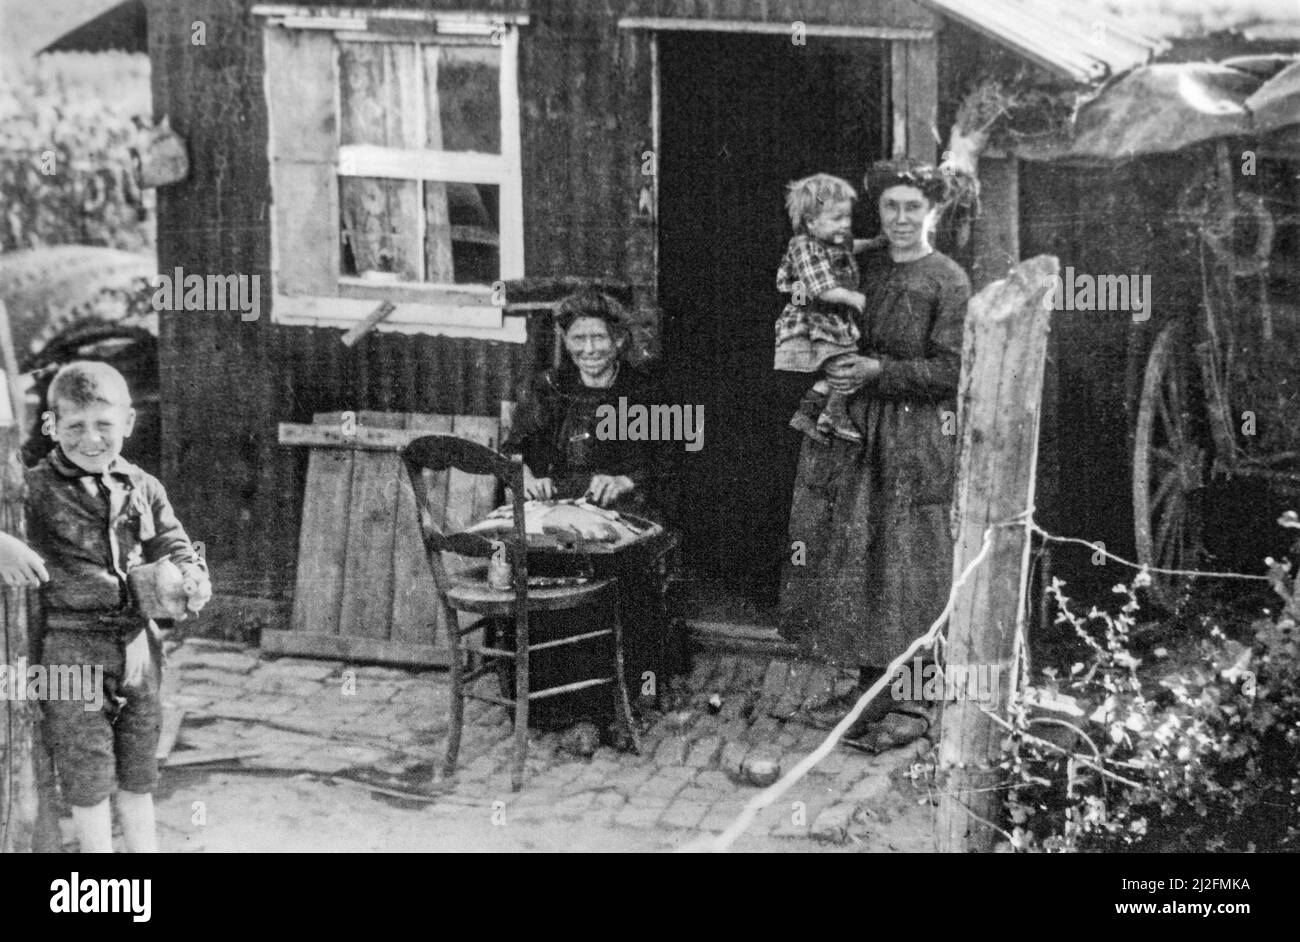 Barraca de madera utilizada como casa prefabricada temporal para las víctimas civiles flamencos de la Primera Guerra Mundial en 1920 en Boezinge, Flandes Occidental, Bélgica Foto de stock